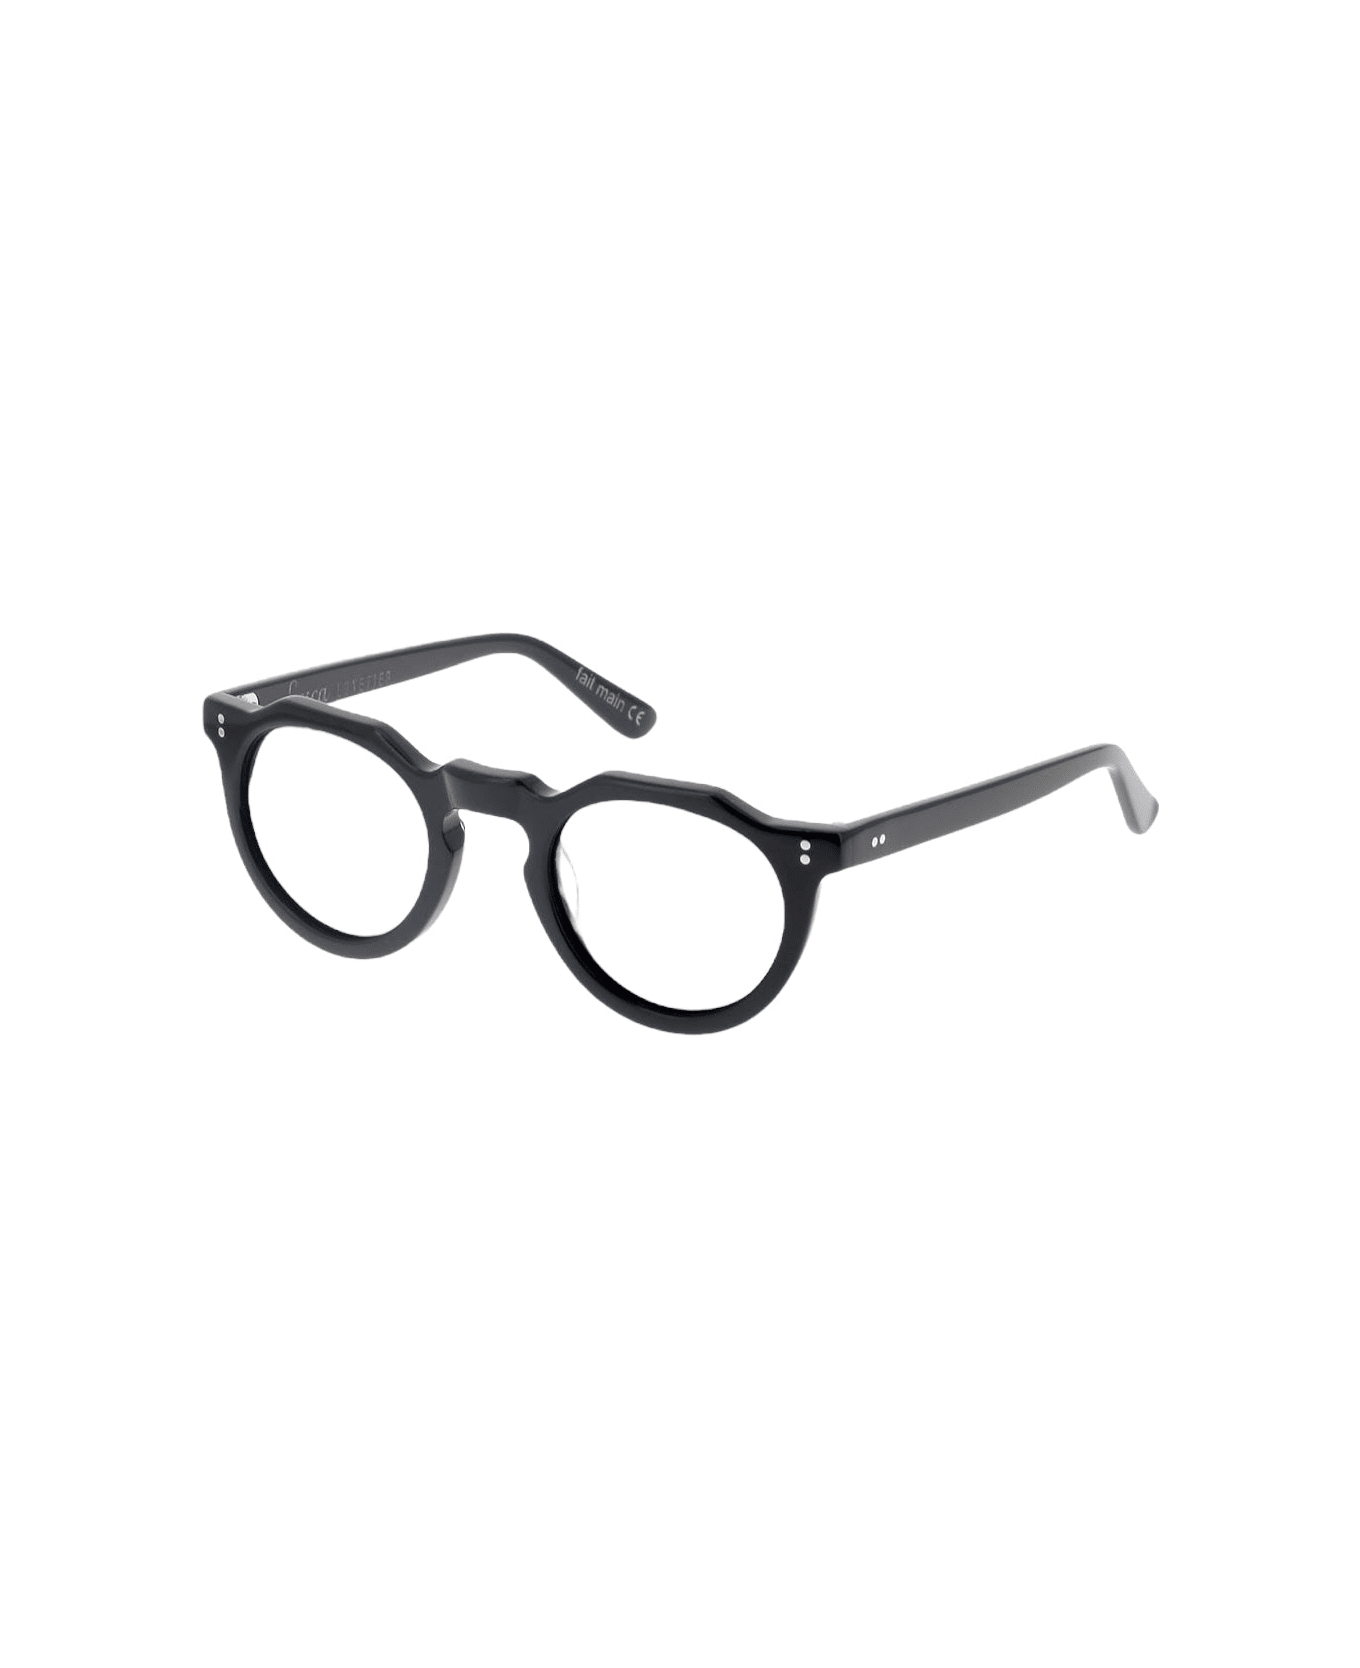 Lesca Pica- Black - Col. 100 Glasses | italist